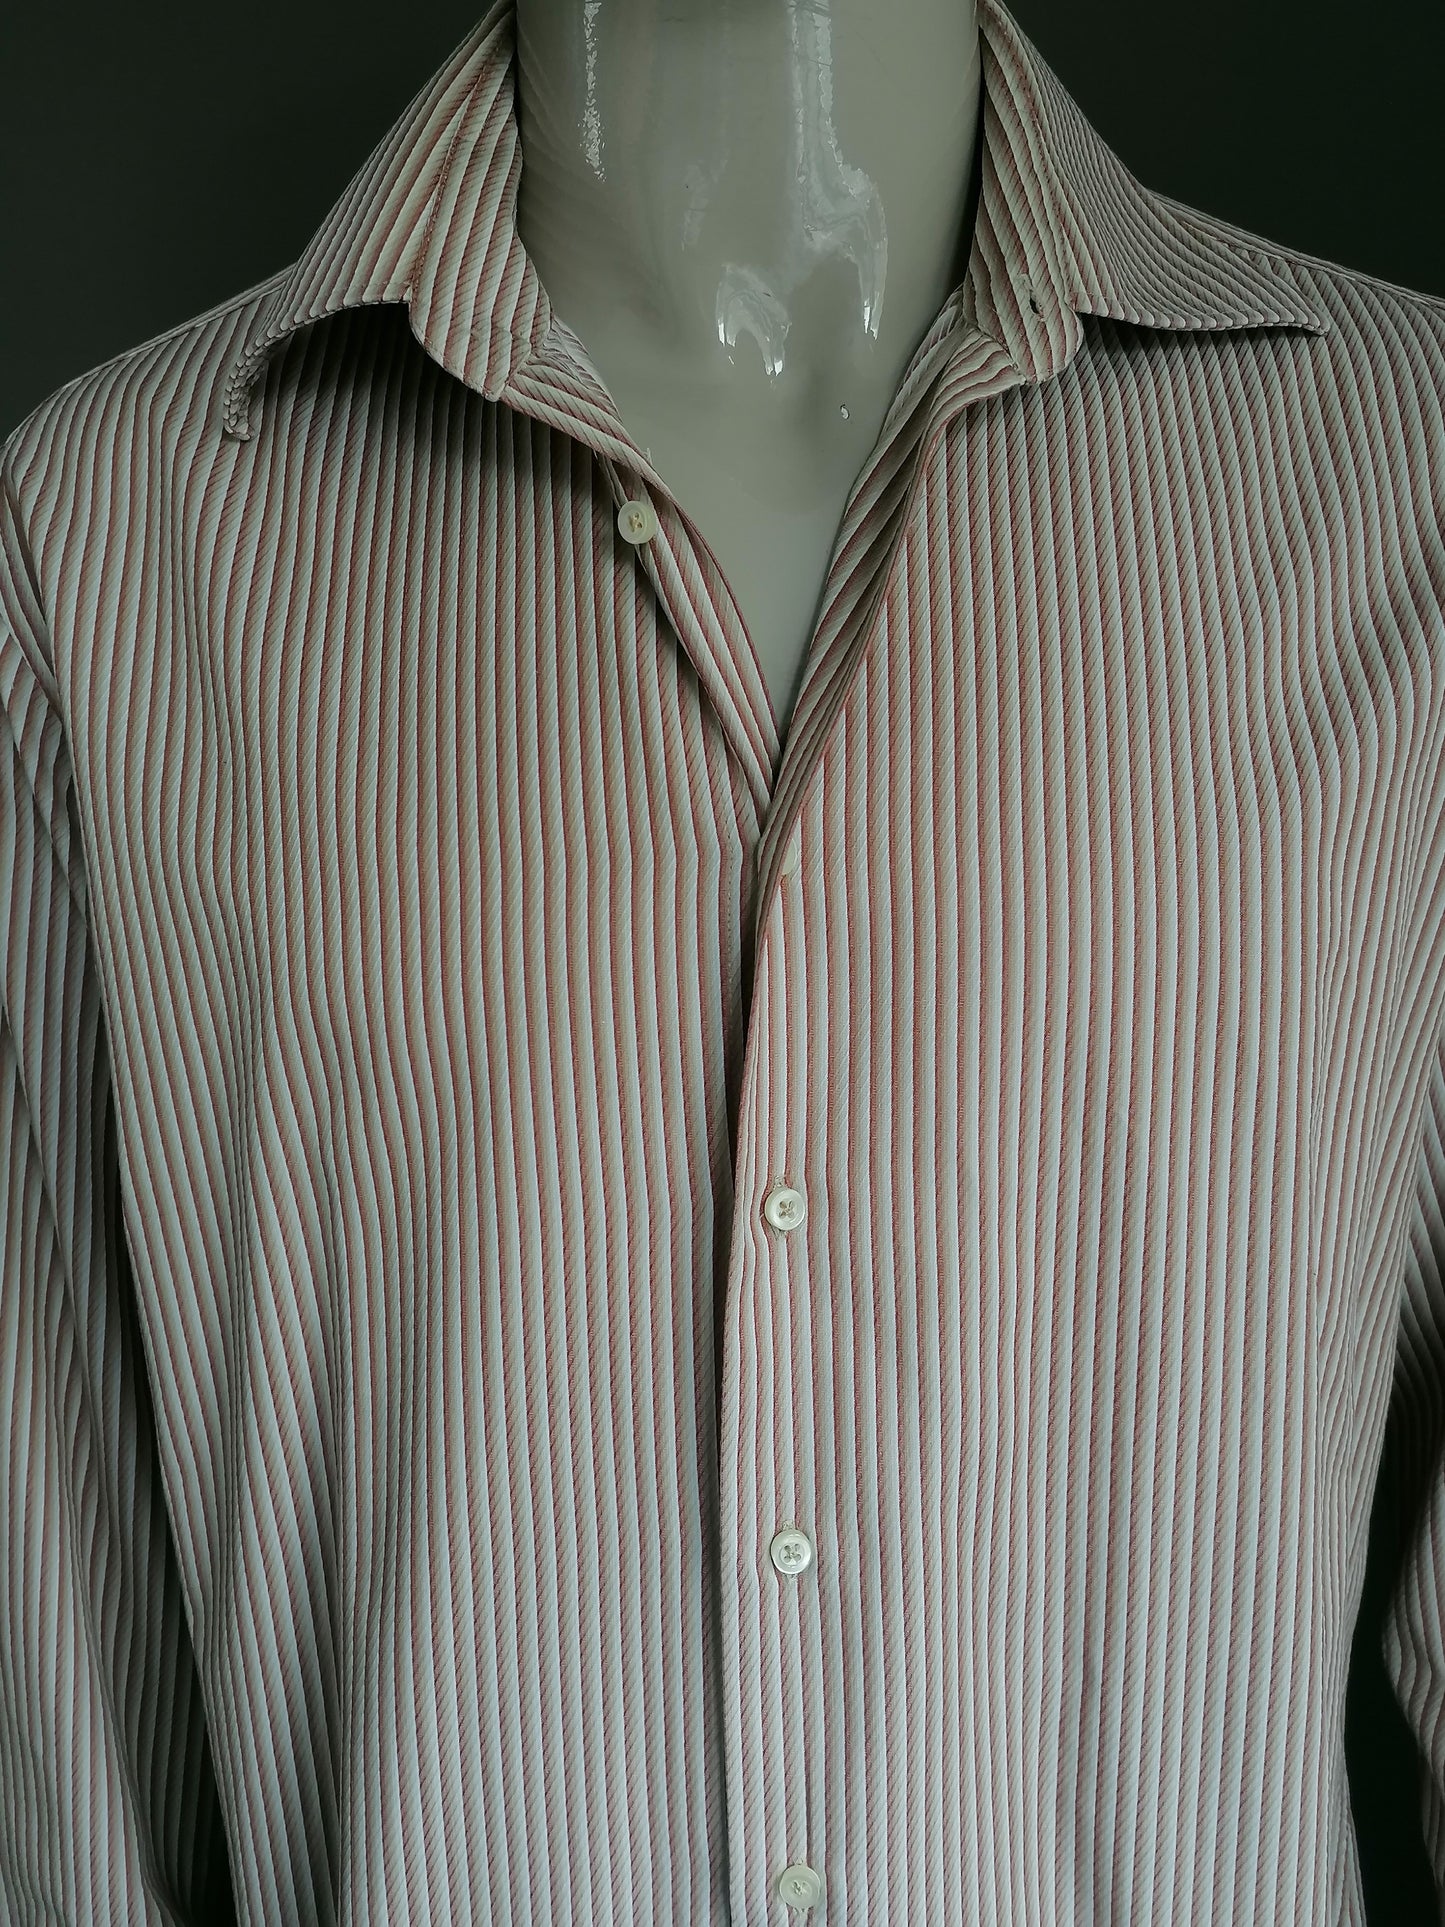 Zara overhemd. Bruin Beige gestreept. Vintage Look. Maat 44 / XL.